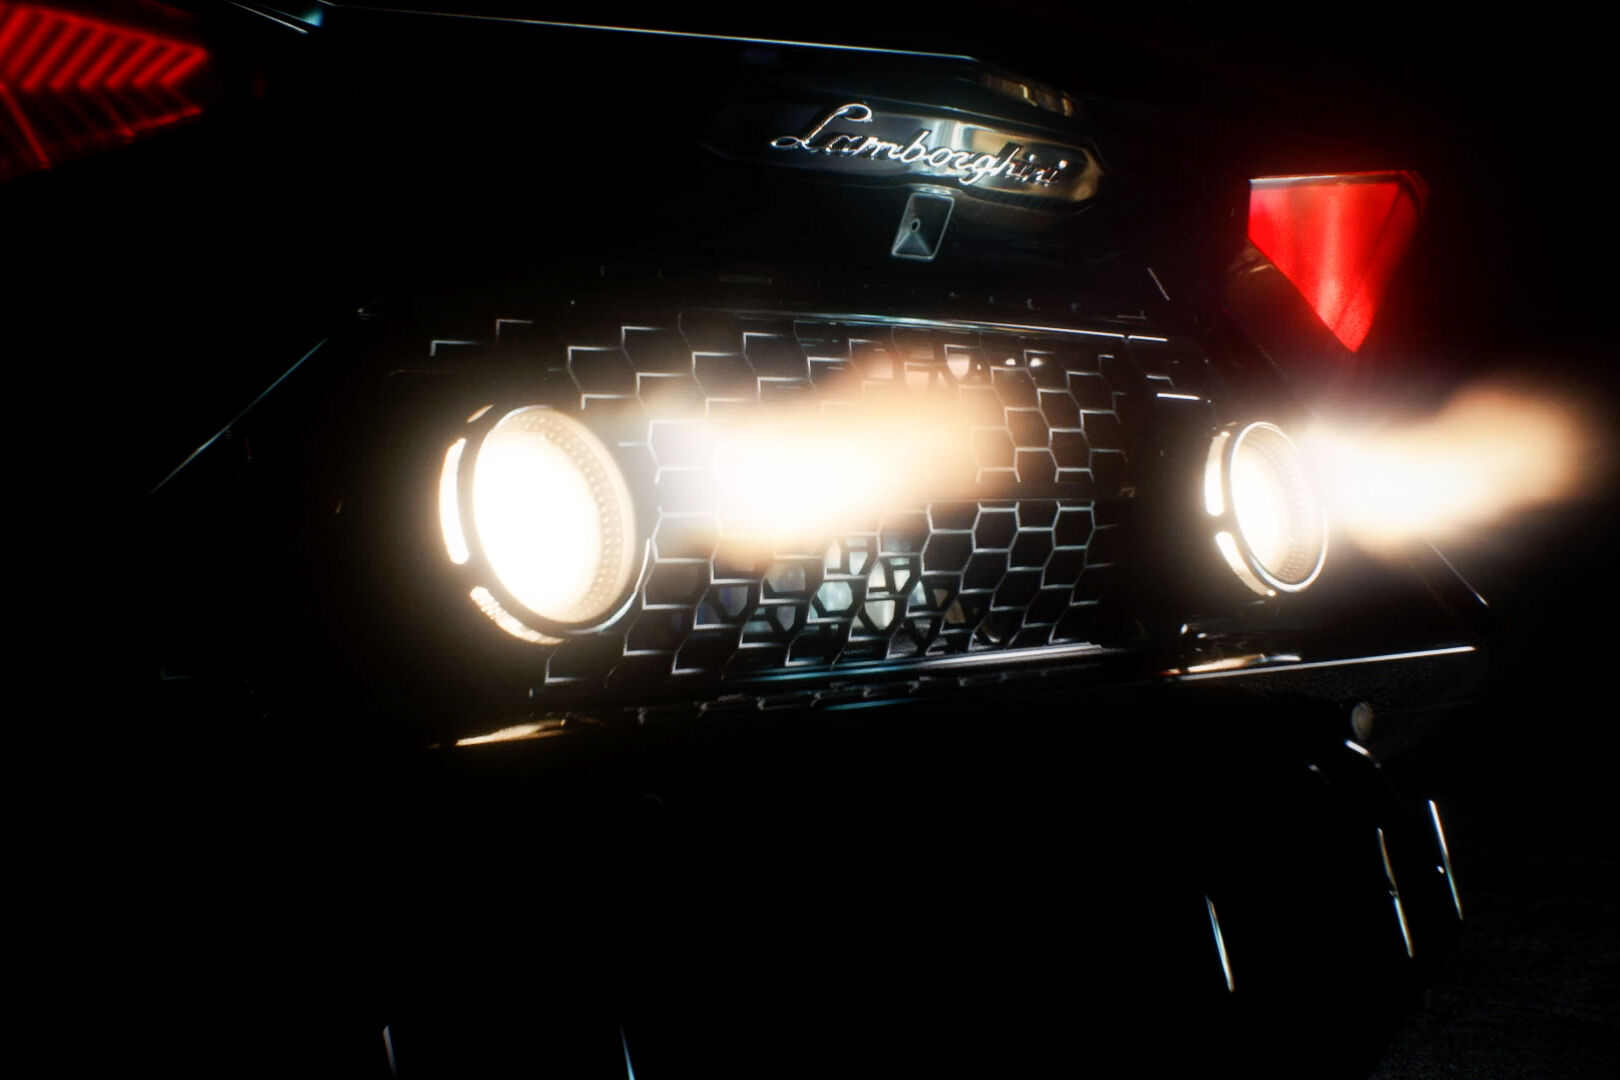 Lamborghini Aventador LP 780-4 Ultimae Coupé eksklusif yang akan dipasangkan dengan NFT 1.1 dan dilelang pada 19 April 2022 tangkapan layar dari video trailer